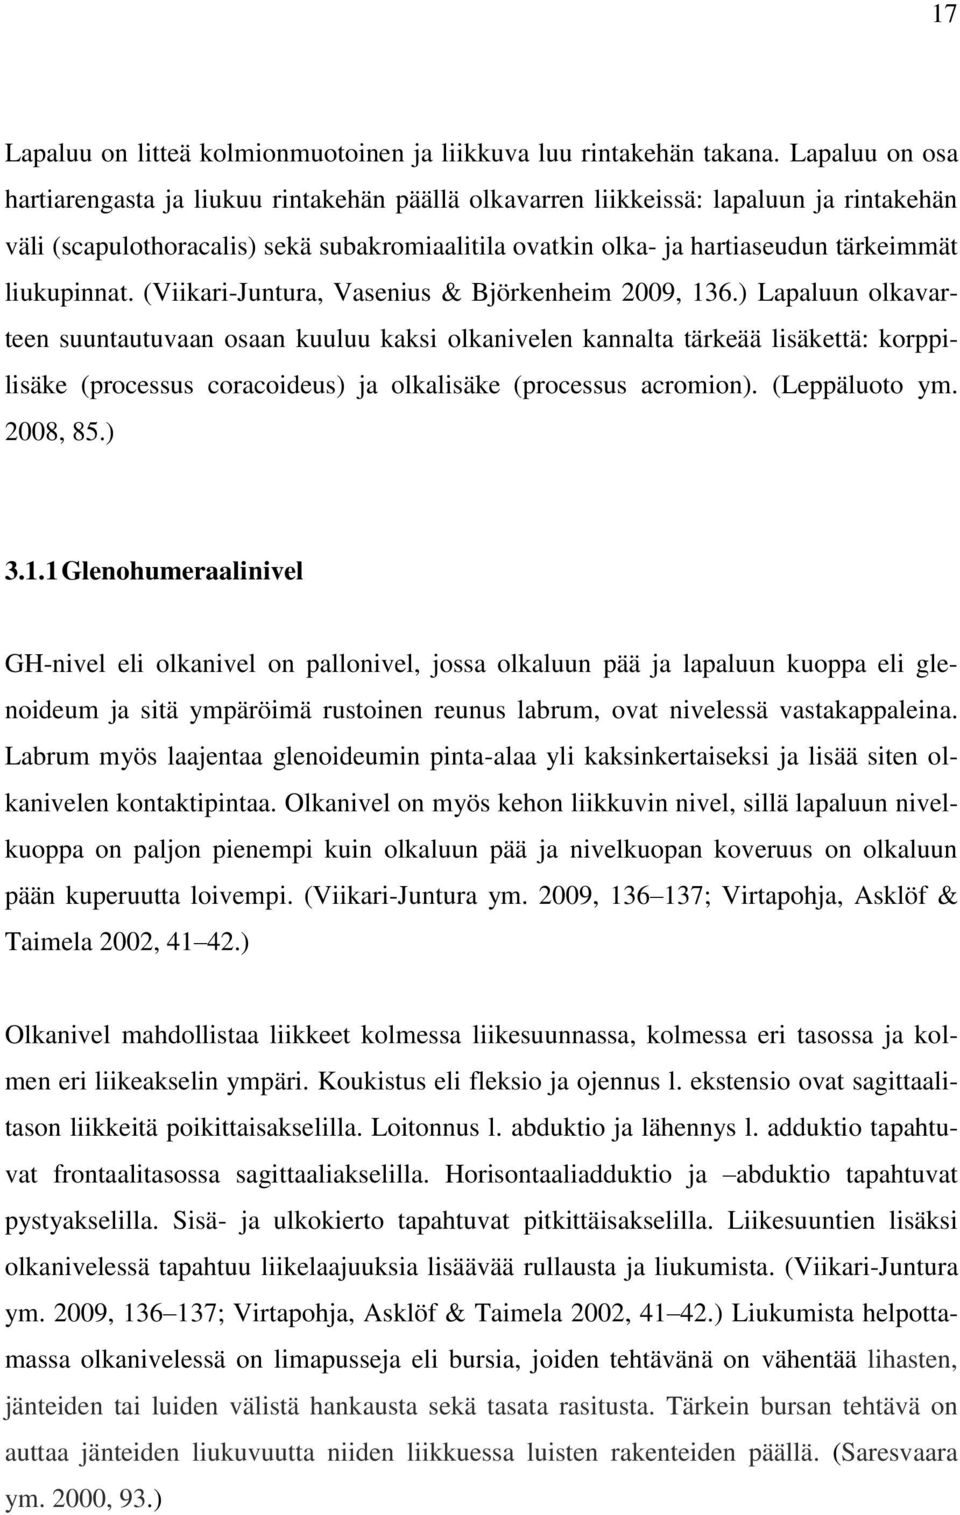 liukupinnat. (Viikari-Juntura, Vasenius & Björkenheim 2009, 136.